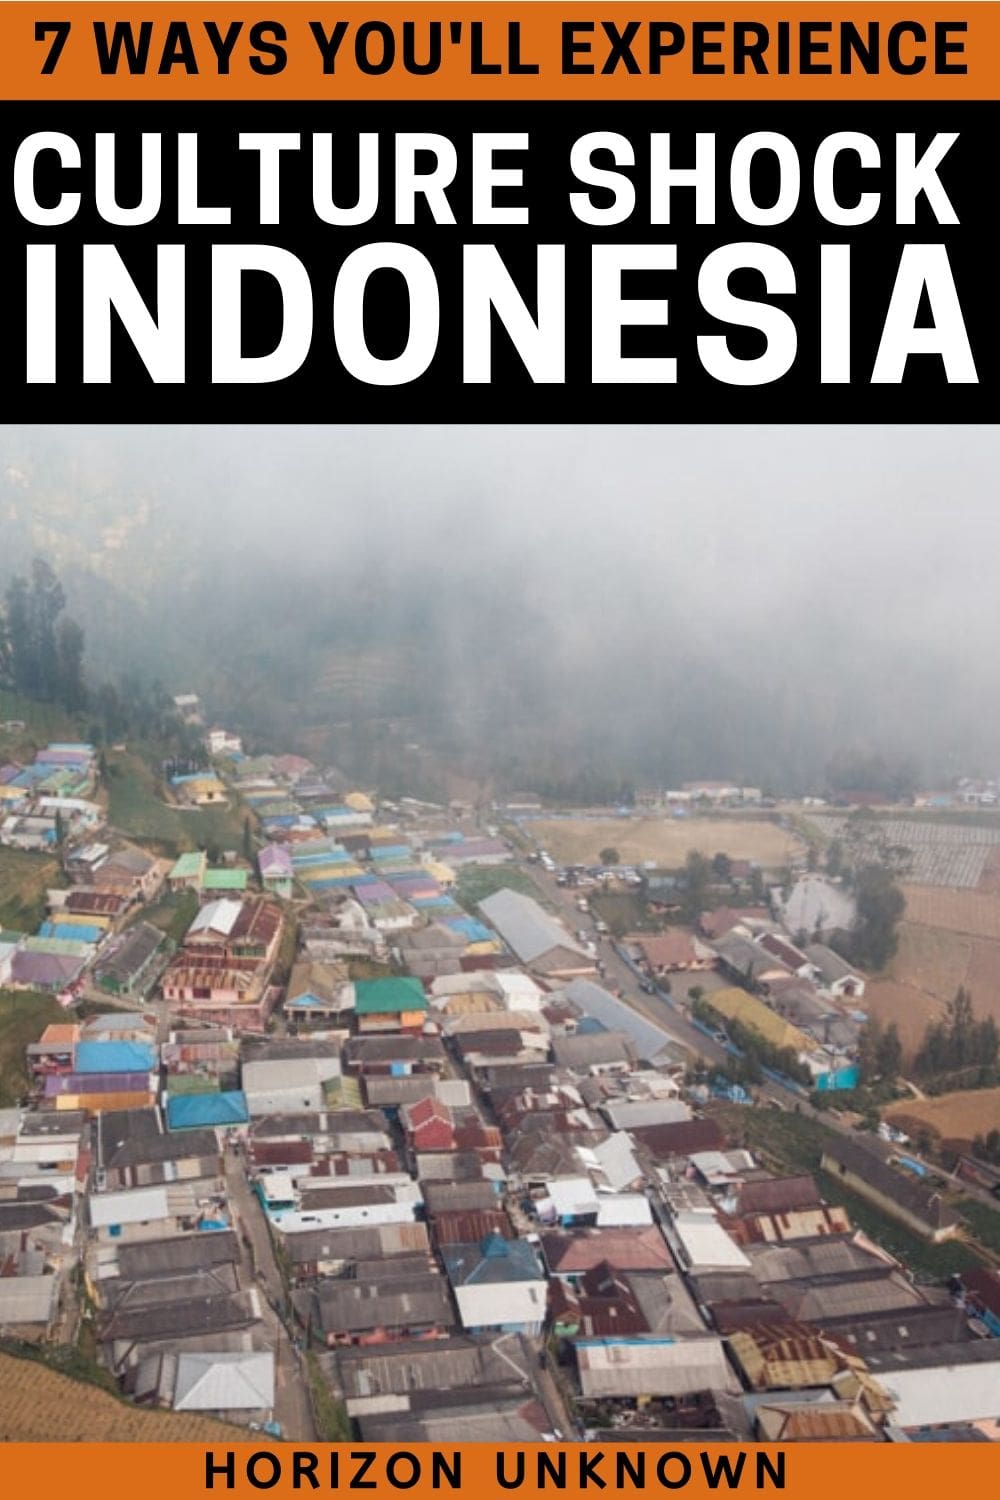 7 culture shock in Indonesia